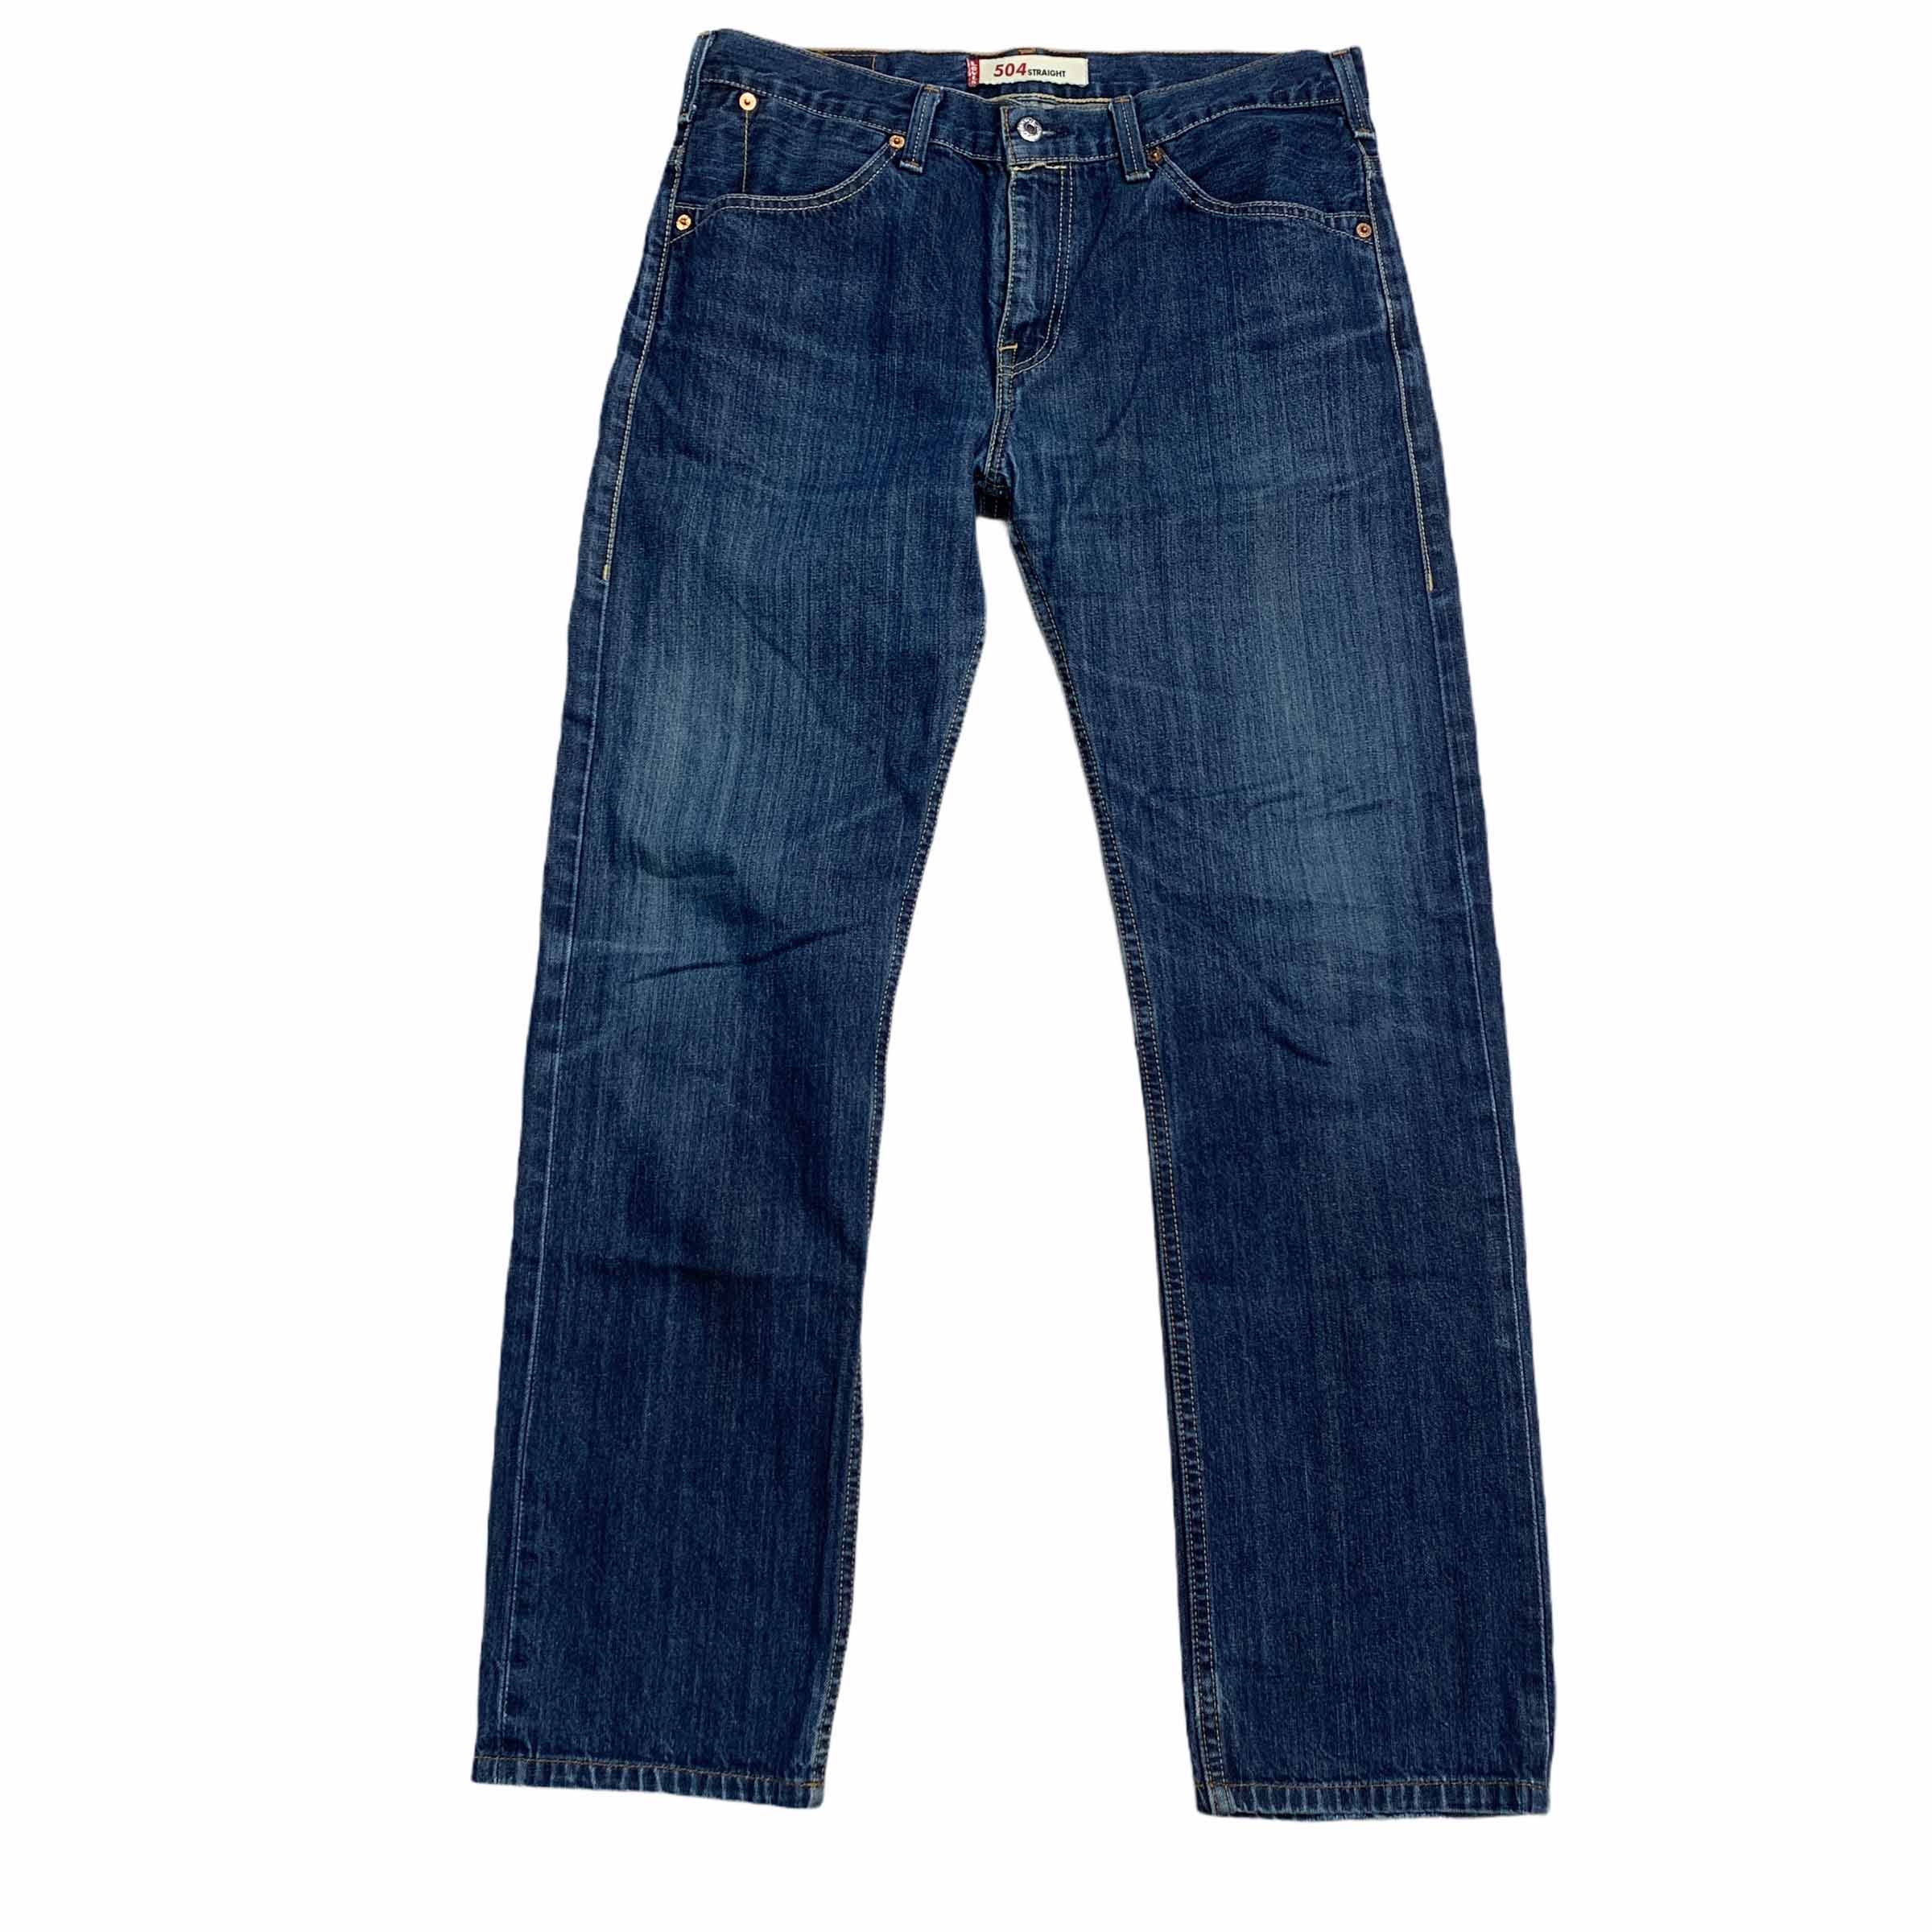 [Levis] (Vintage) 504 Denim pants - Size 32/33